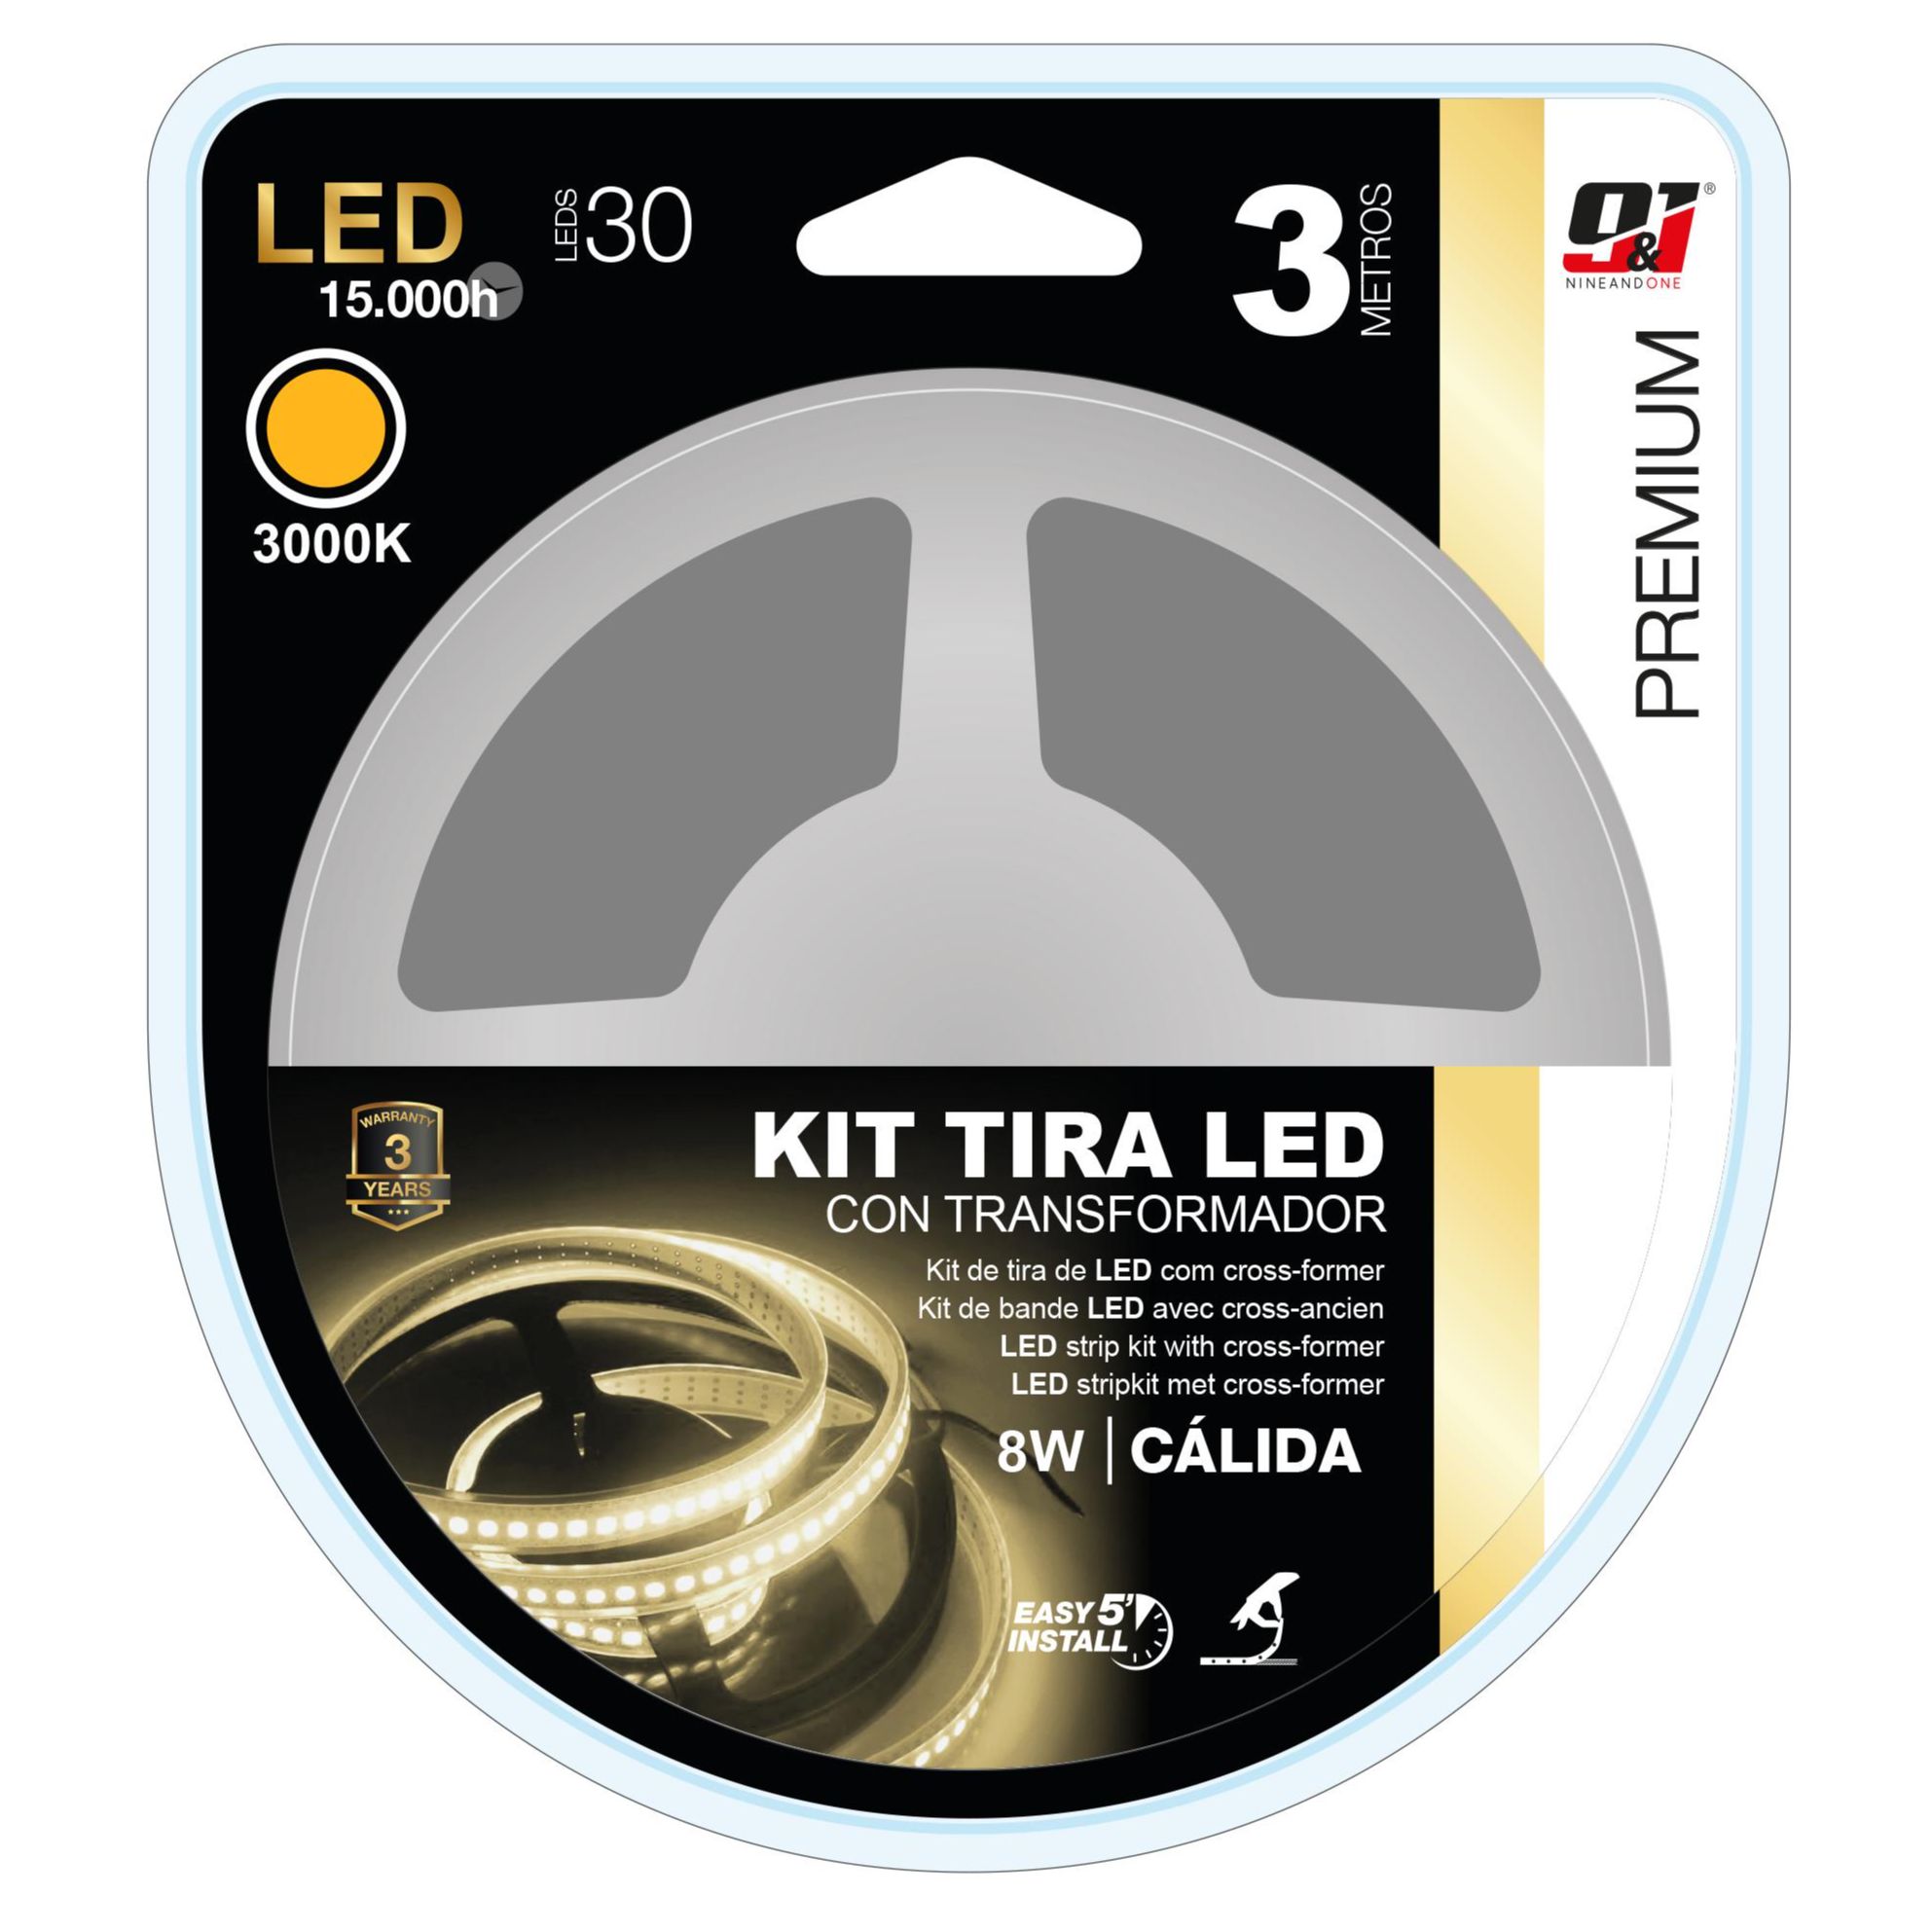 KIT TIRA LED 1.5 METROS RGB (PILAS NO INCLUIDAS)